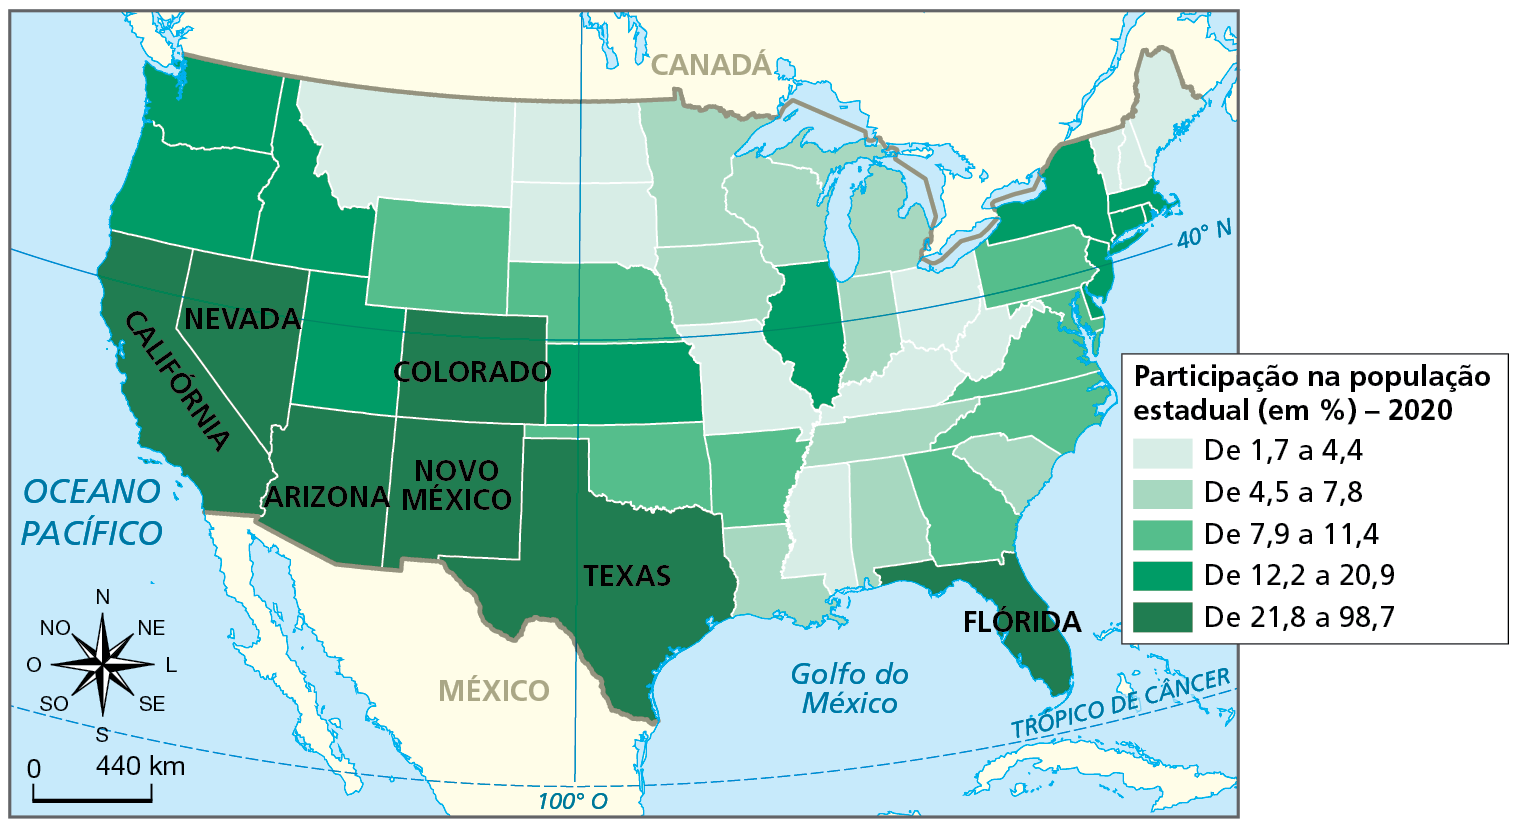 Mapa. Estados Unidos: distribuição da população hispânico-latina, 2020. Mapa de parte da América do Norte com a divisão política dos Estados Unidos e dados do  percentual da população hispânico-latina por estado.    Participação na população estadual, em porcentagem, em 2020.  De 1,7 a 4,4 por cento da população: estados ao norte, na porção centro-leste e no sudeste. De 4,5 a 7,8 por cento da população: estados ao norte e no sudeste.  De 7,9 a 11,4 por cento: estados na porção central, a leste e sudeste.  De 12,2 a 20,9 por cento da população: estados a noroeste e no sudeste.   De 21,8 a 98,7 por cento: Califórnia, Nevada e Arizona na porção sudoeste do país, Novo México, Colorado e Texas na porção centro-sul e Flórida no sudeste.  À esquerda, rosa dos ventos e escala de 0 a 440 quilômetros.